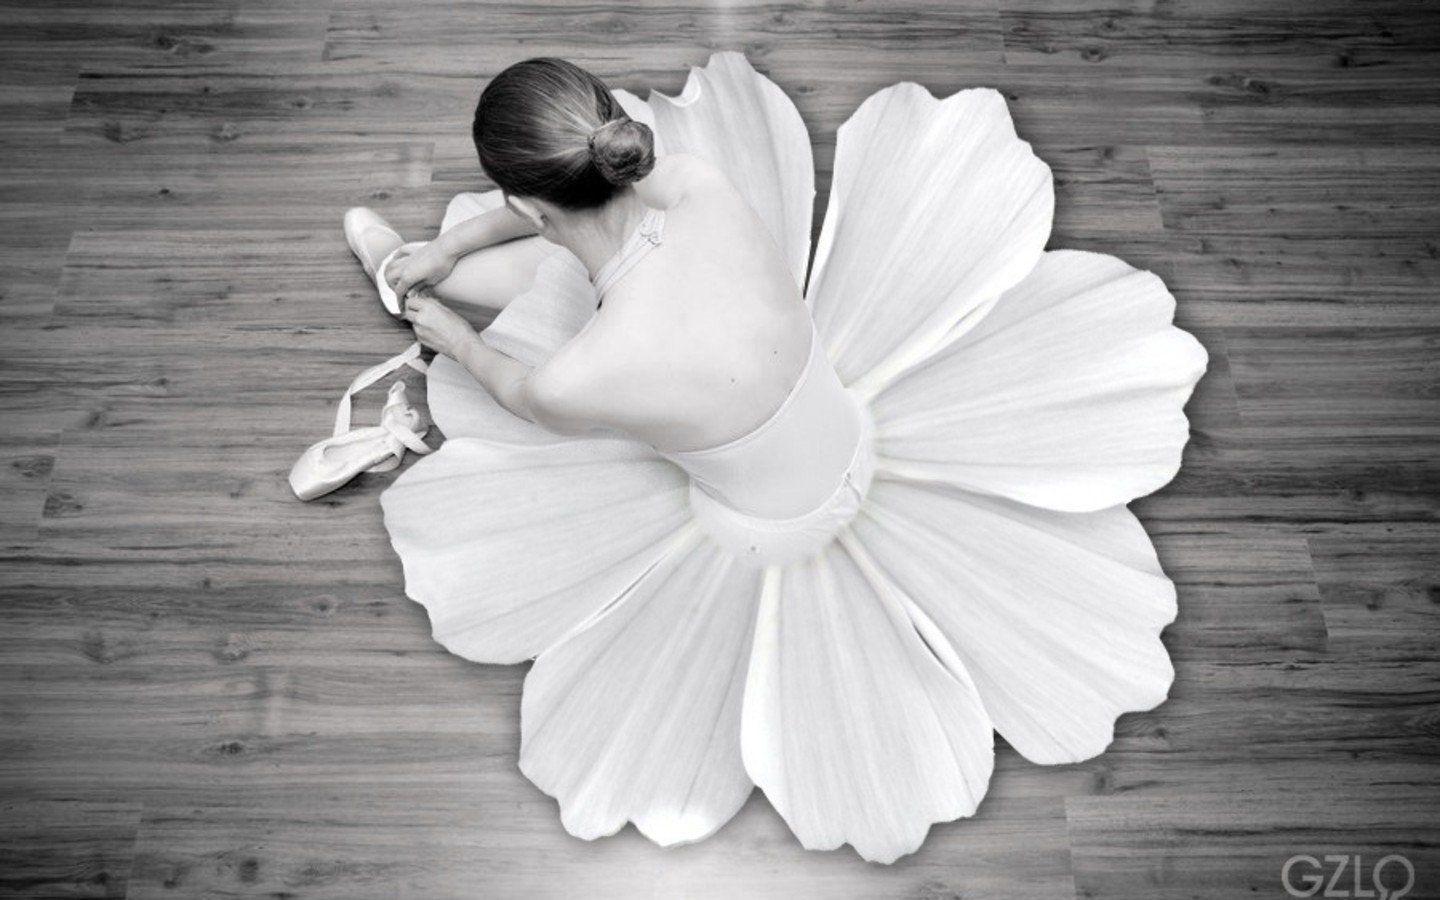 Flowers ballet monochrome dancers ballet shoes wallpaperx900